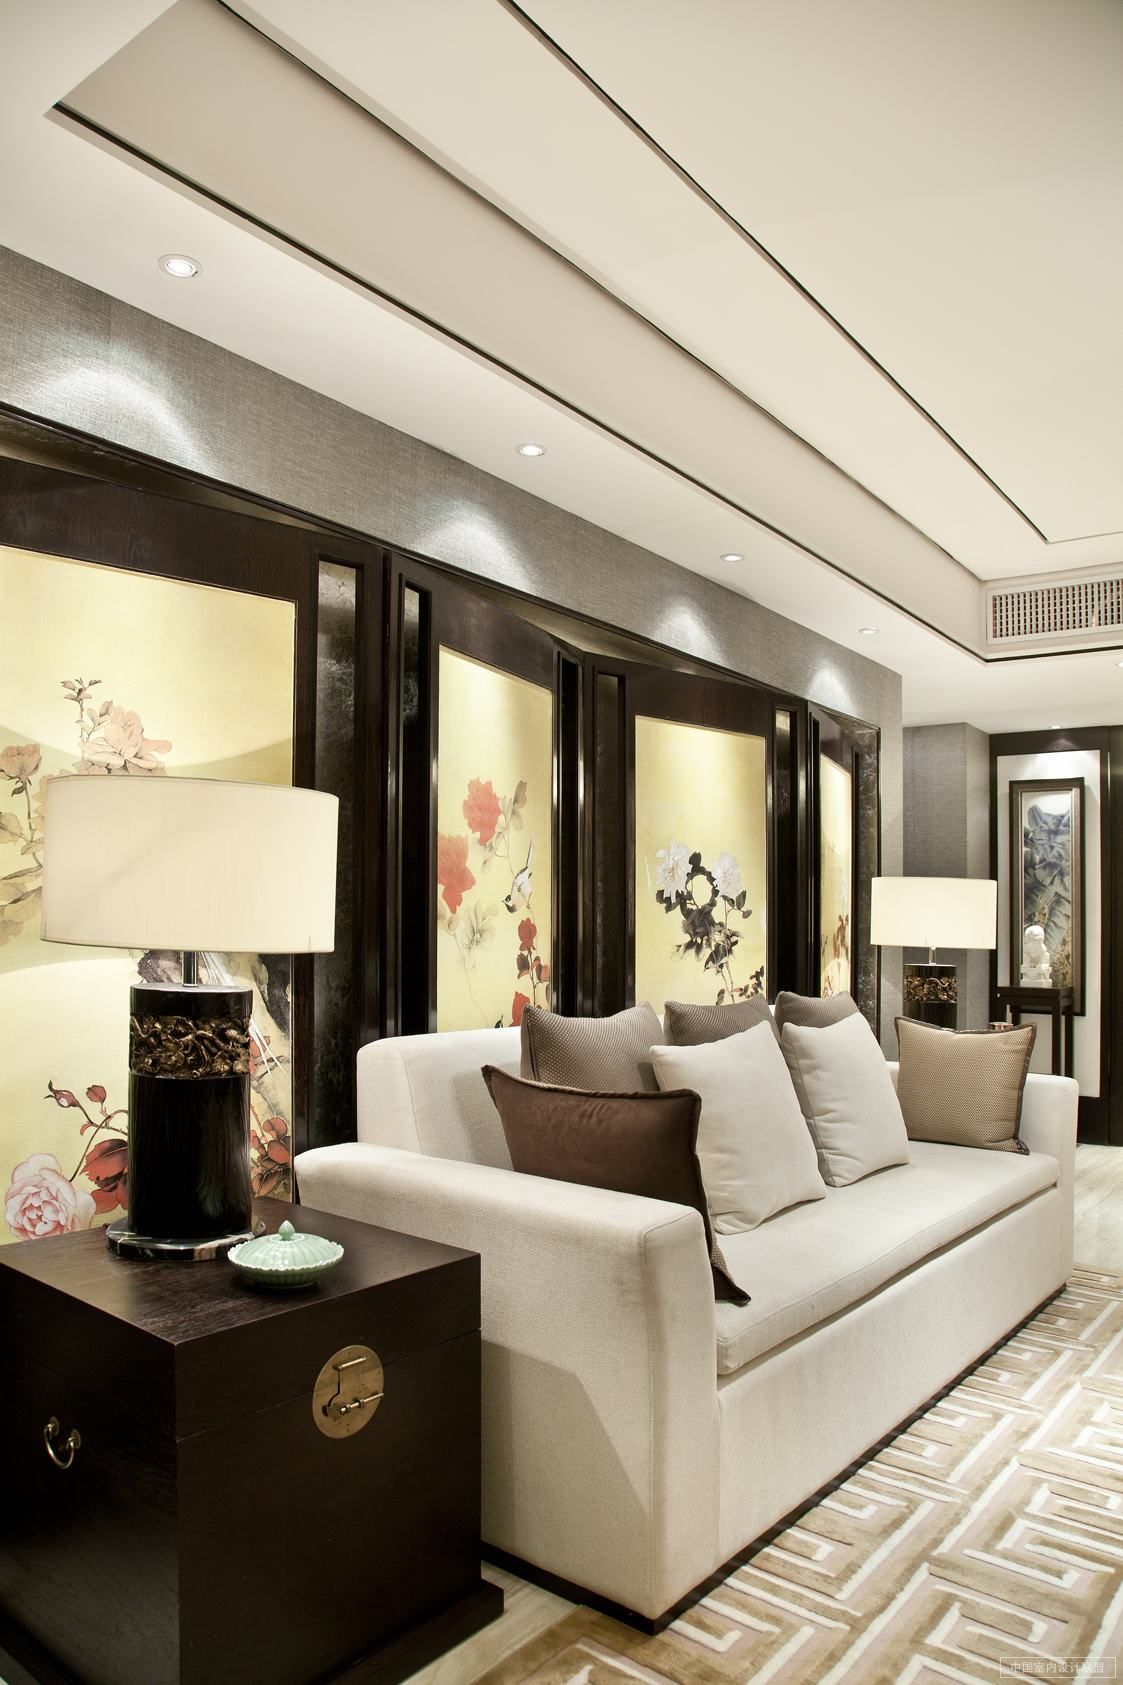 新中式 古典 四居 效果图 隔断 屏风 客厅图片来自实创装饰范范在鸟语茶香的分享